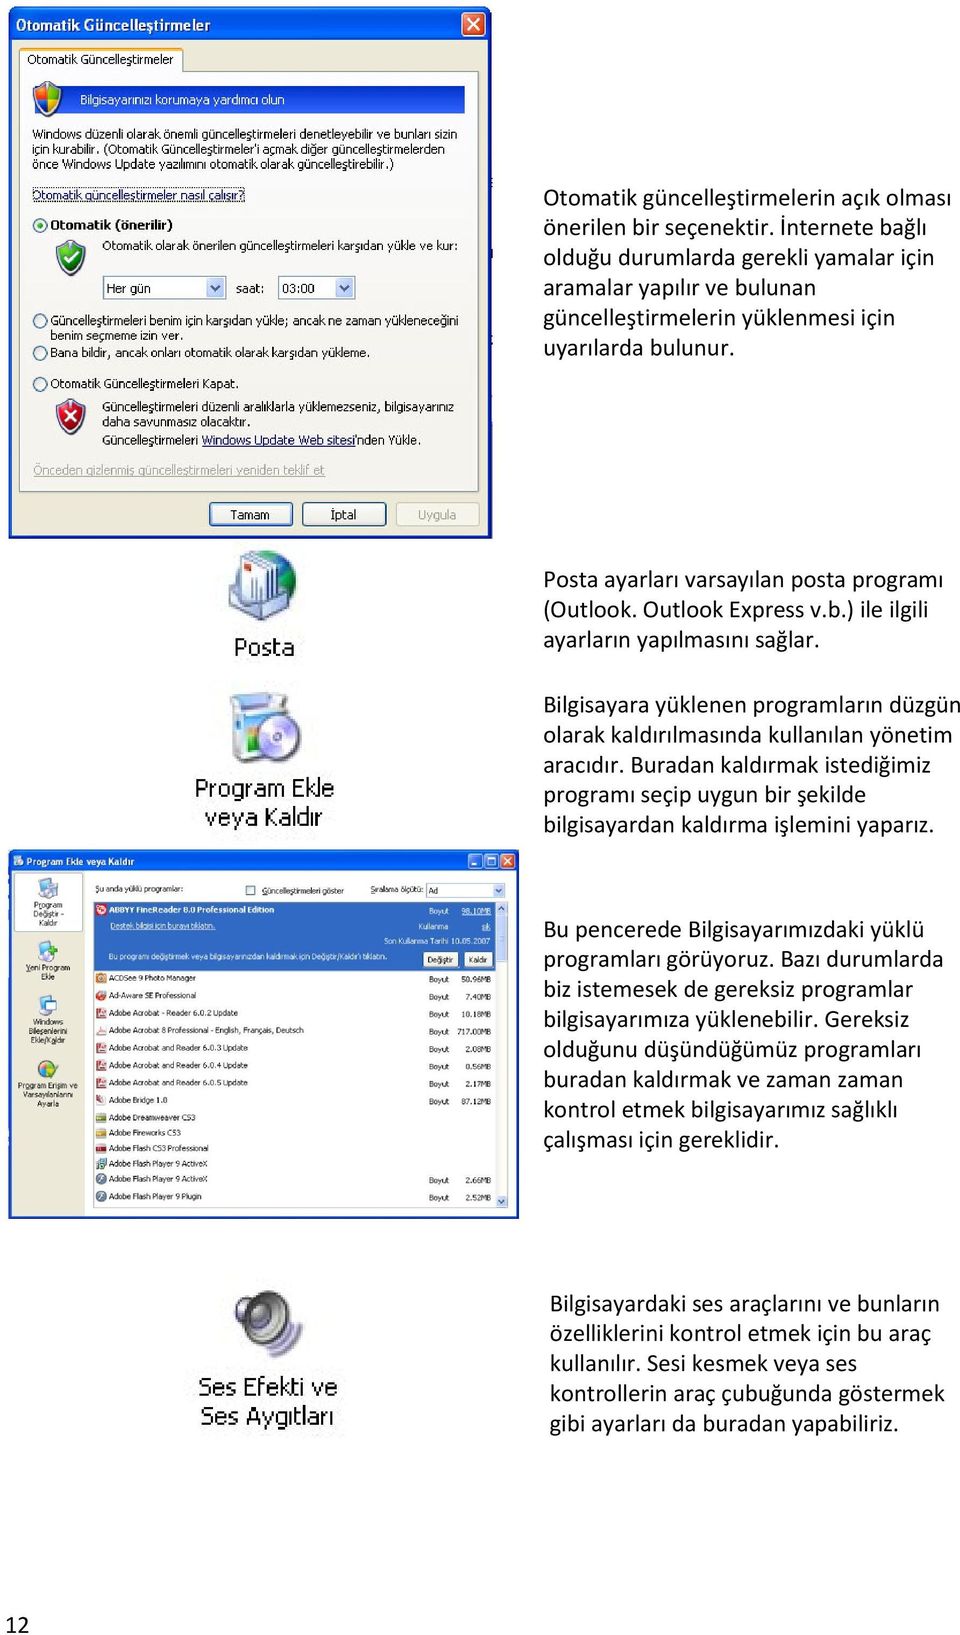 Outlook Express v.b.) ile ilgili ayarların yapılmasını sağlar. Bilgisayara yüklenen programların düzgün olarak kaldırılmasında kullanılan yönetim aracıdır.